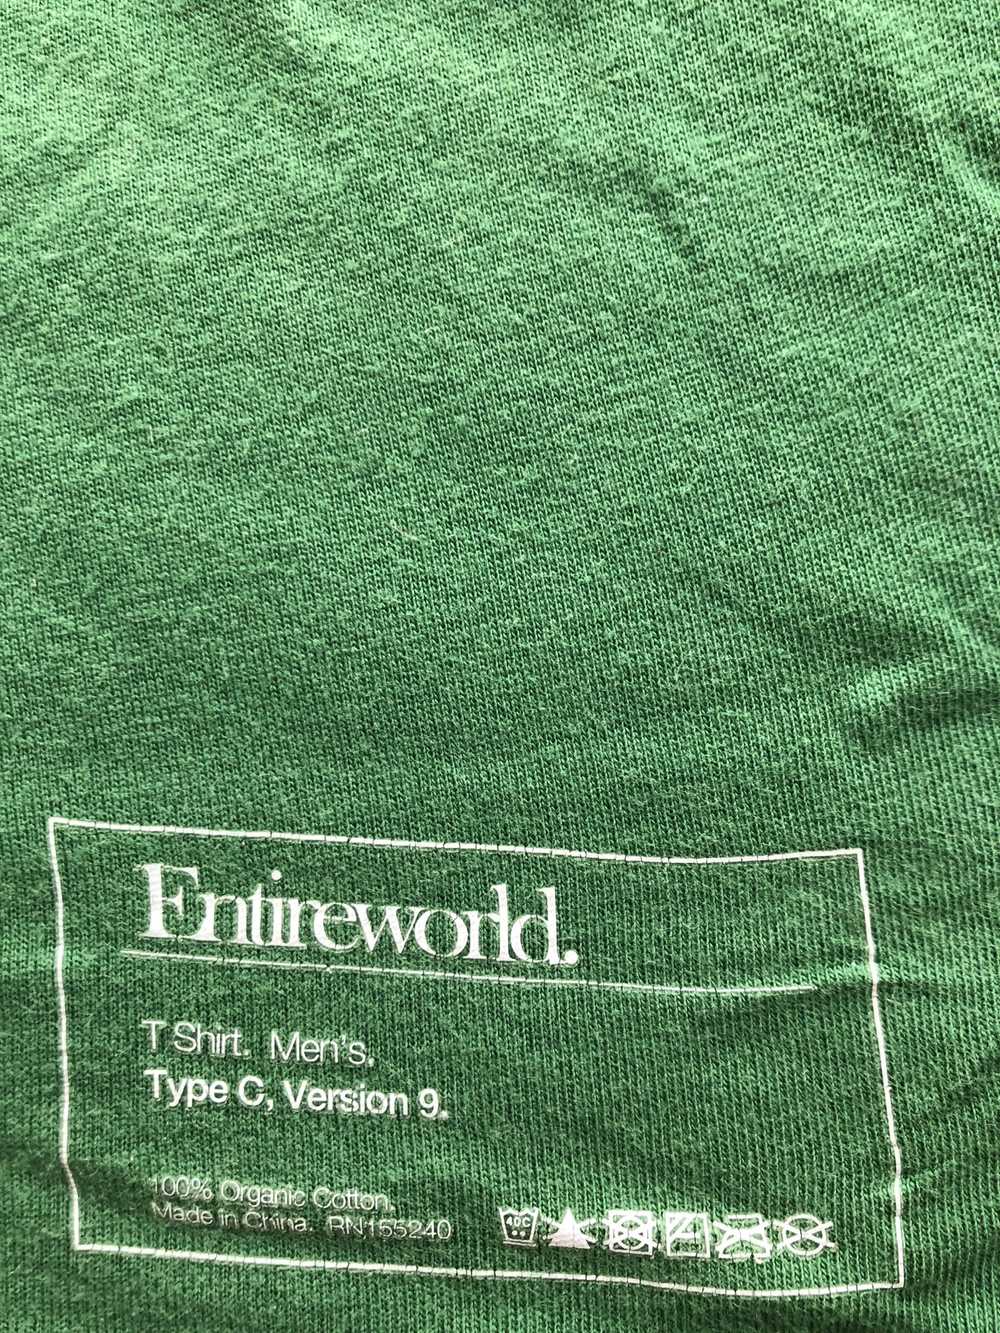 Entireworld Type C, Version 9 Long Sleeve T Shirt - image 2